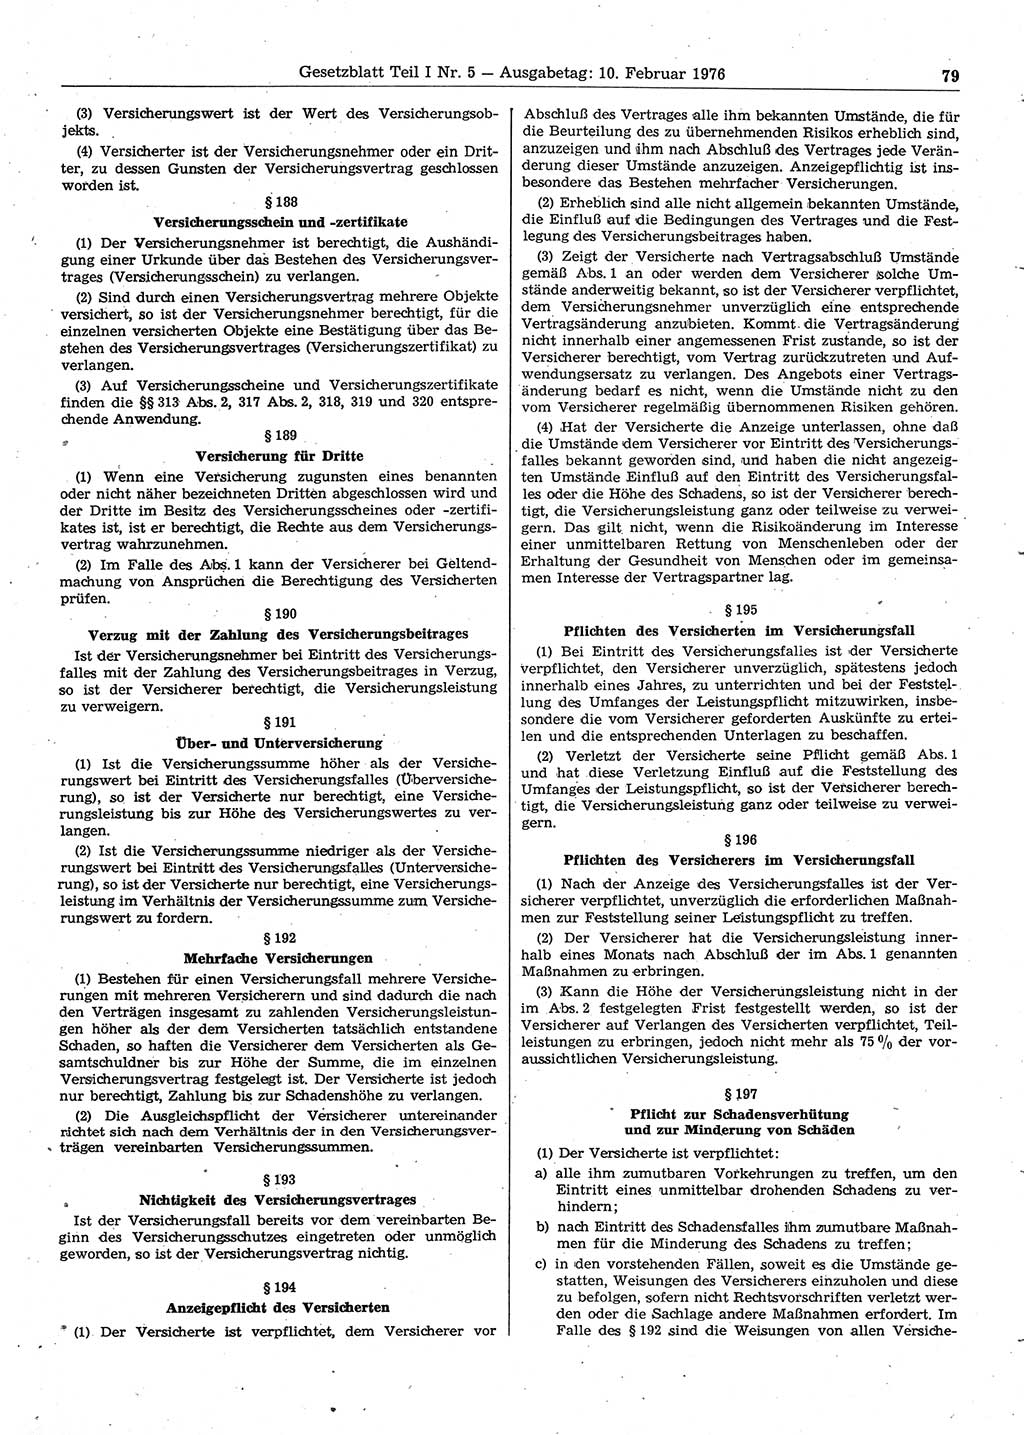 Gesetzblatt (GBl.) der Deutschen Demokratischen Republik (DDR) Teil Ⅰ 1976, Seite 79 (GBl. DDR Ⅰ 1976, S. 79)